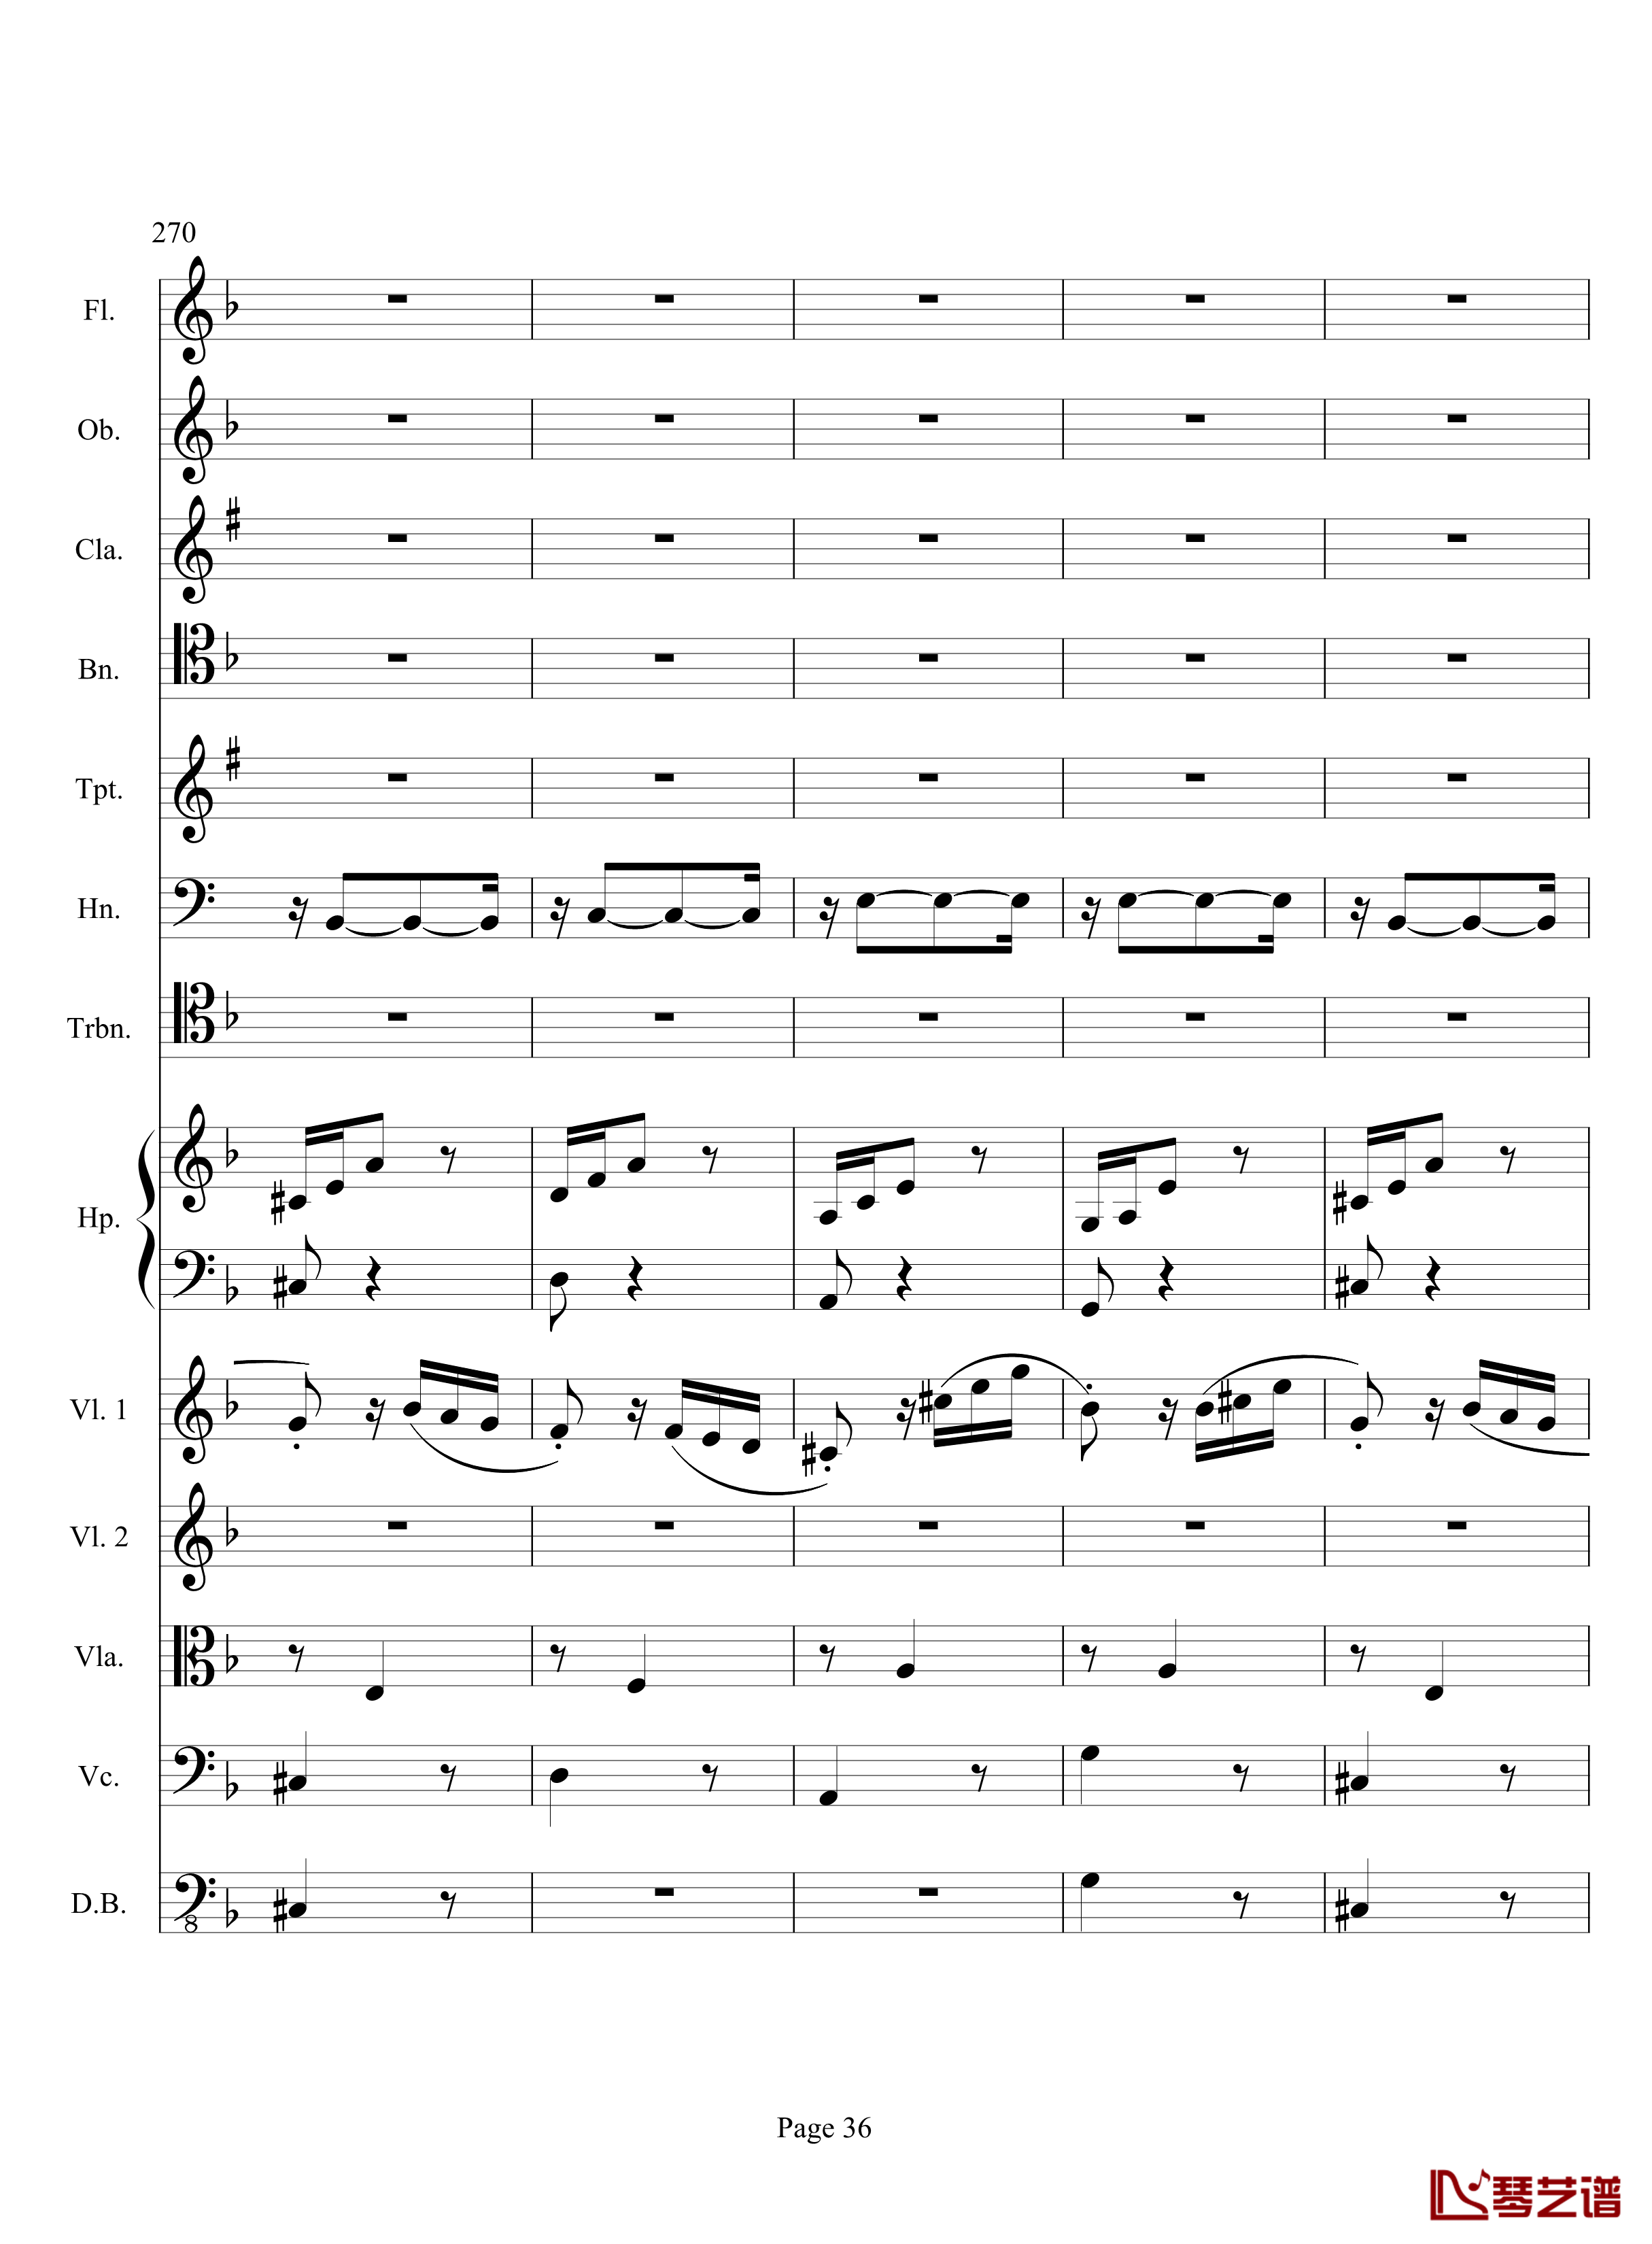 奏鸣曲之交响钢琴谱-第17首-Ⅲ-贝多芬-beethoven36